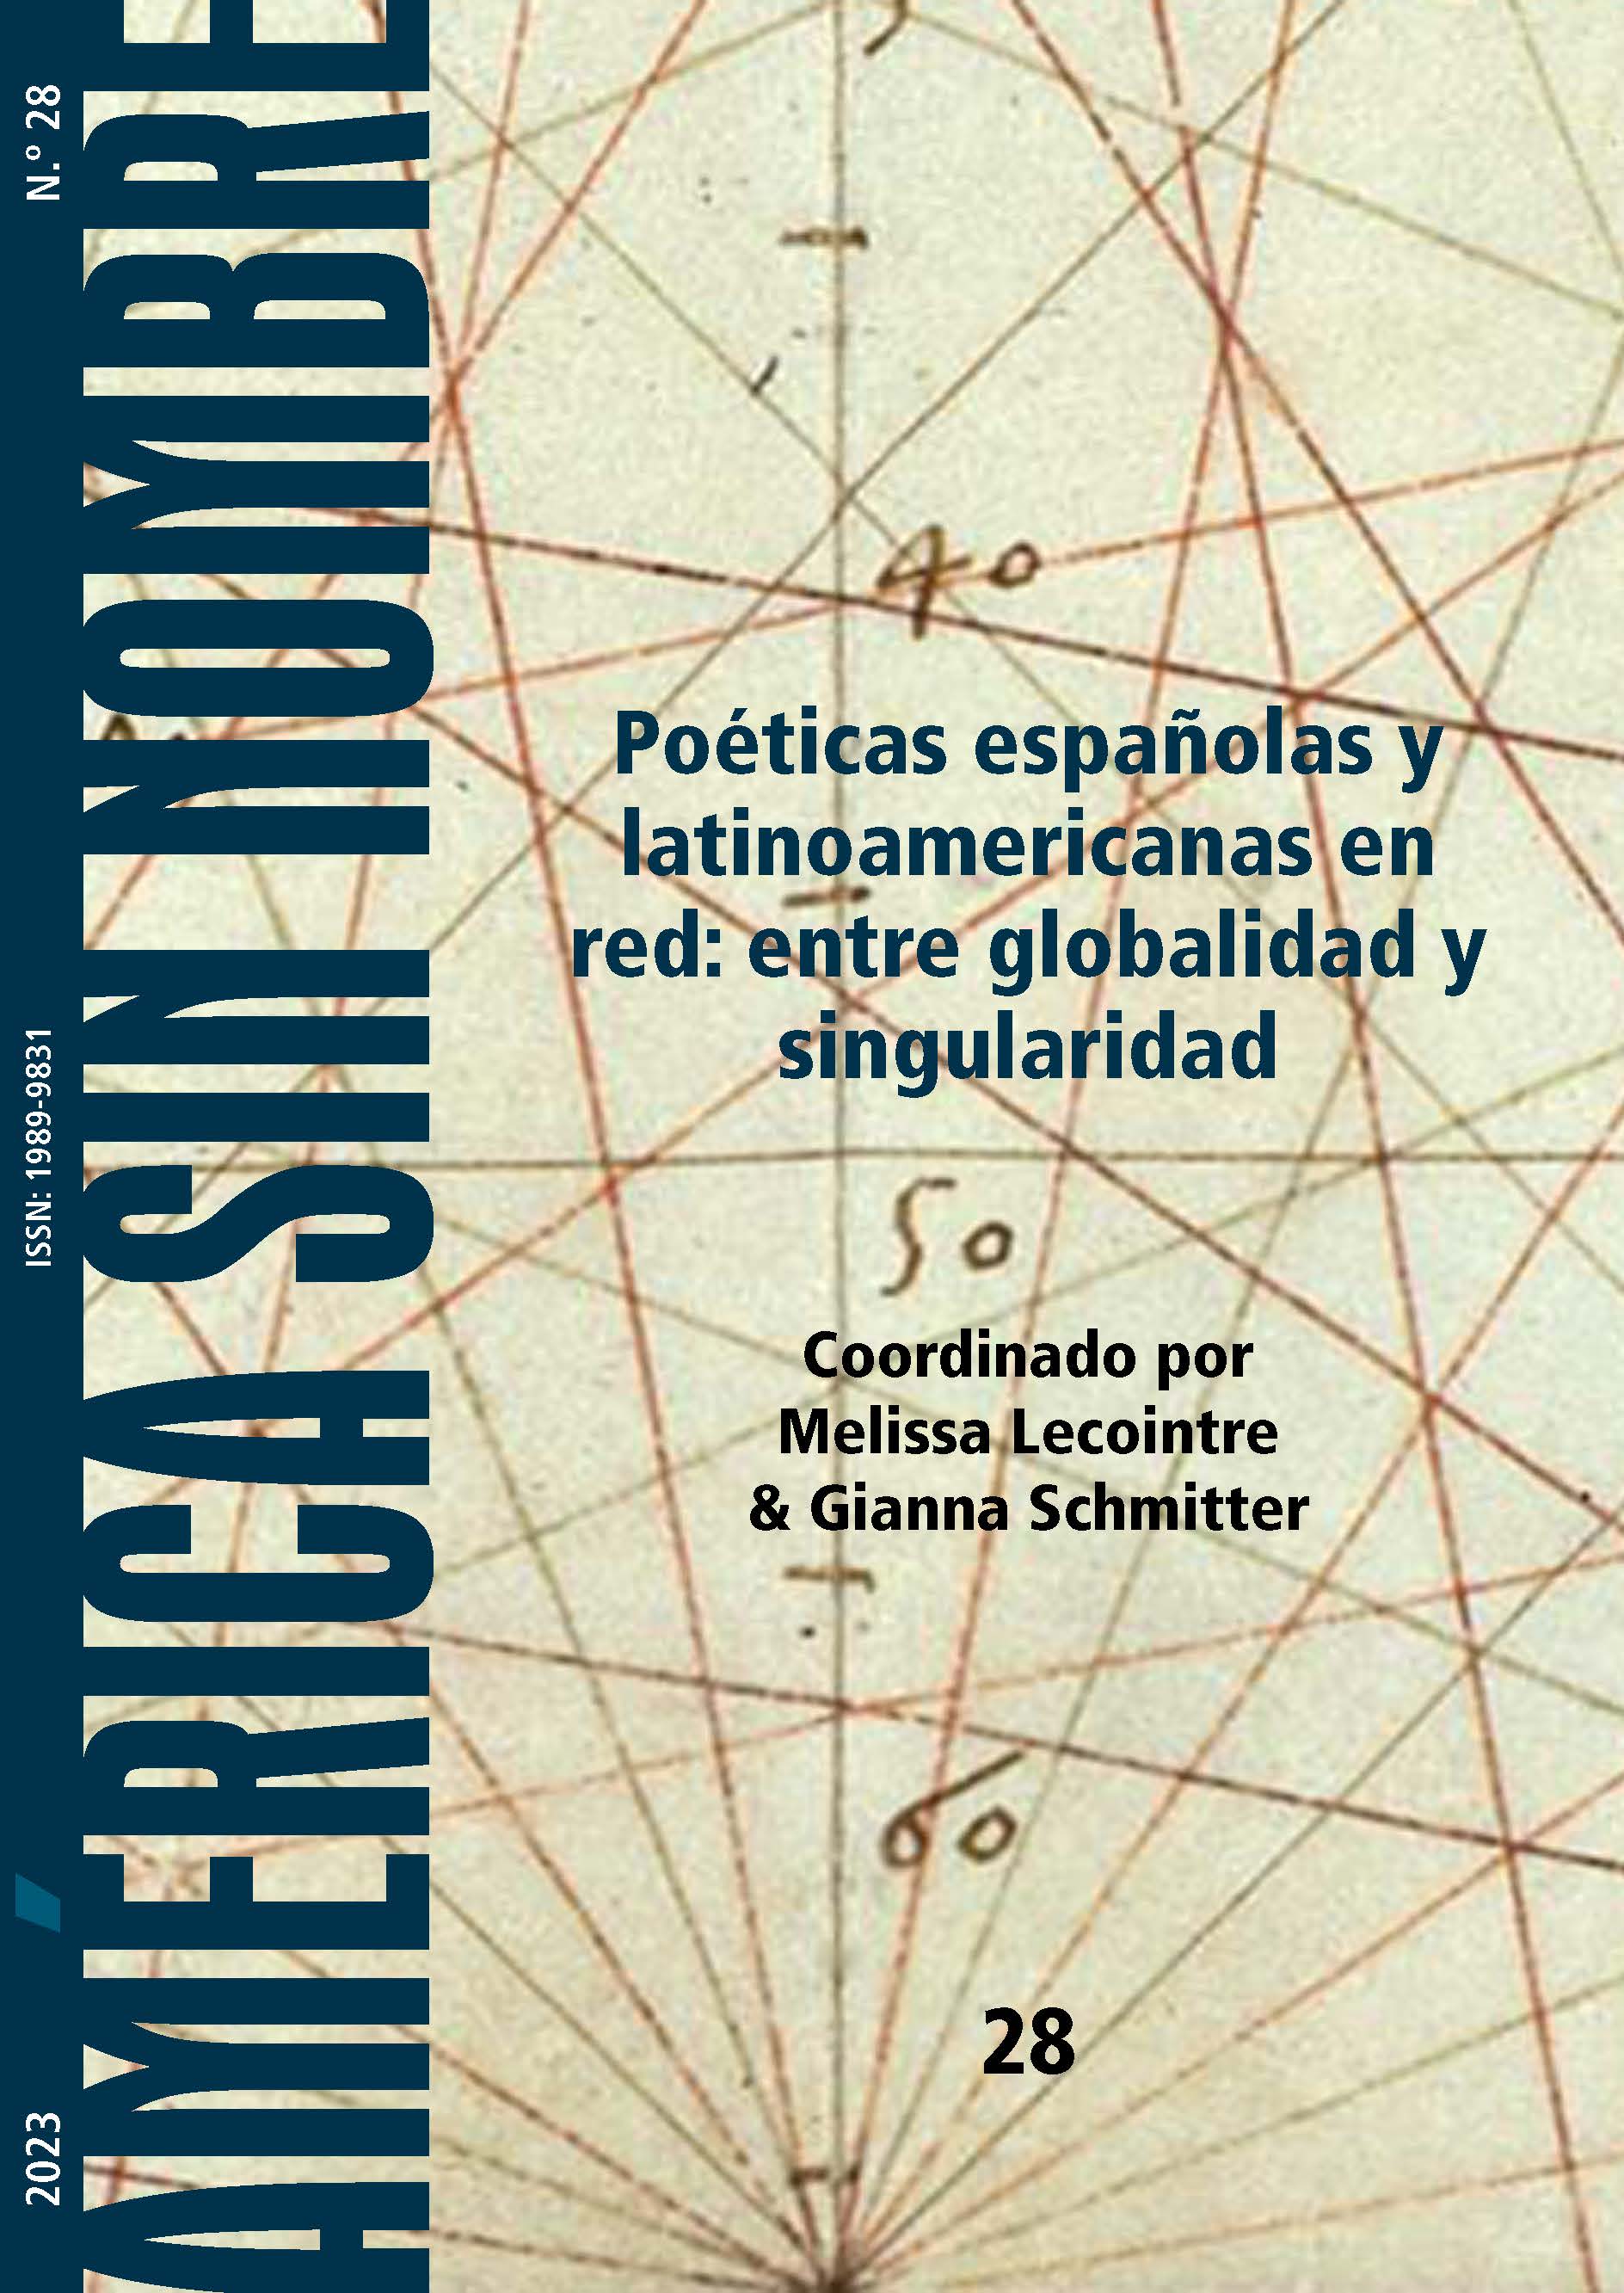 					Ver Núm. 28: Poéticas españolas y latinoamericanas en red: entre globalidad y singularidad
				